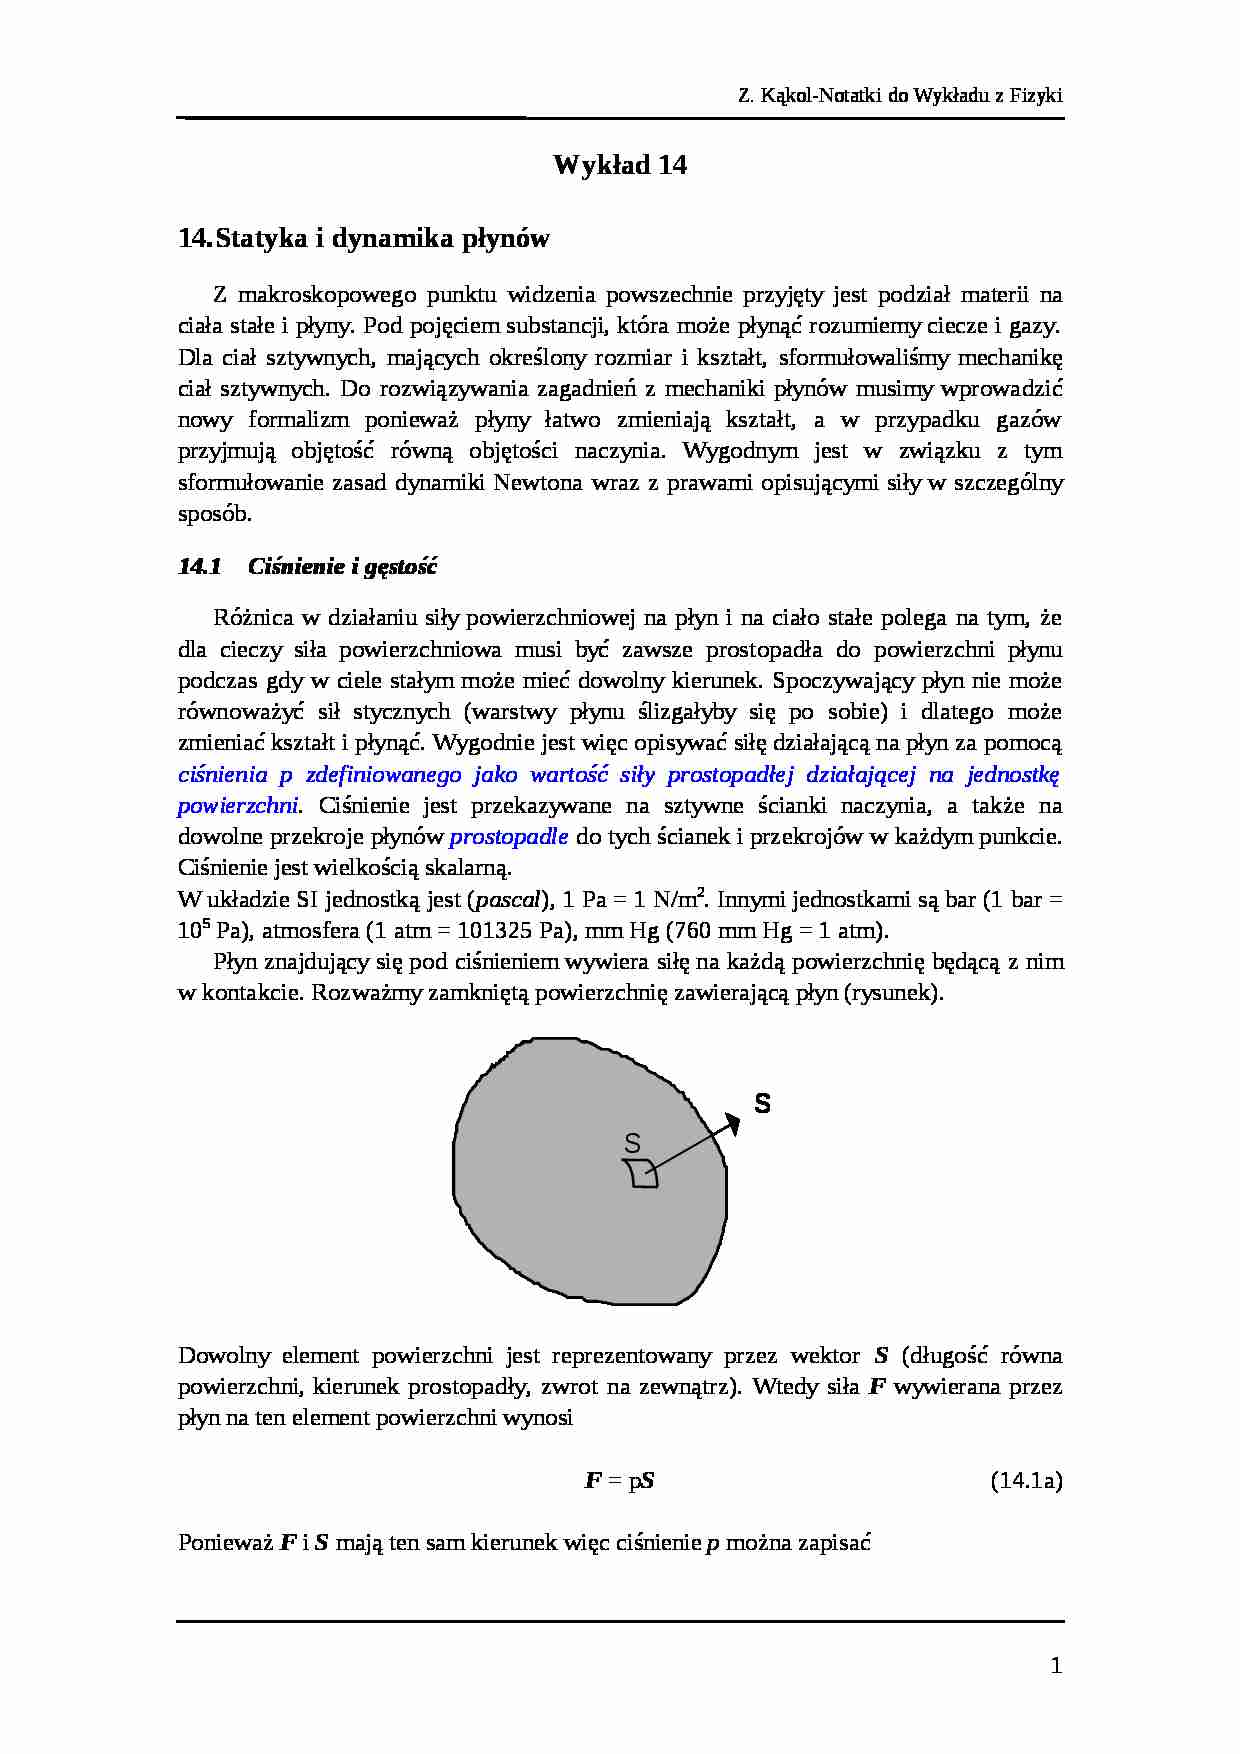 Wykład 14 fizyka - strona 1